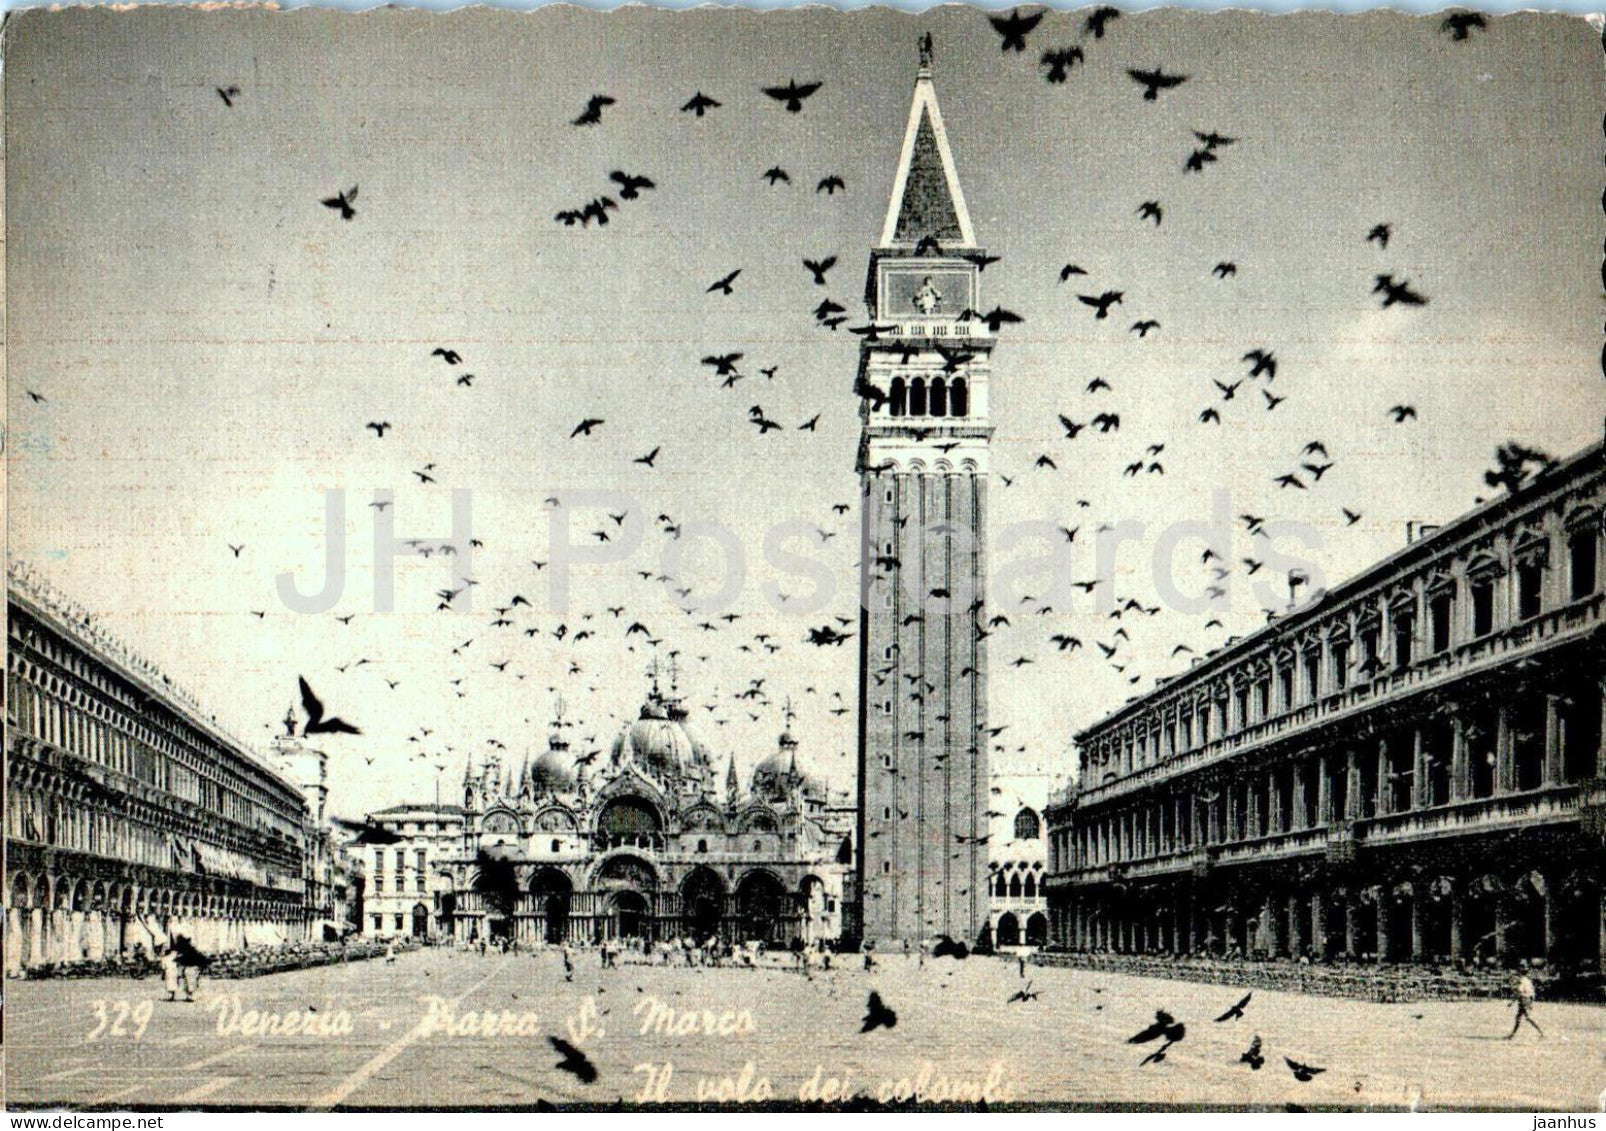 Venezia - Venice - Piazza S Marco - Il volo del colombi - St Mark Square - 329 - old postcard - 1955 - Italy - used - JH Postcards